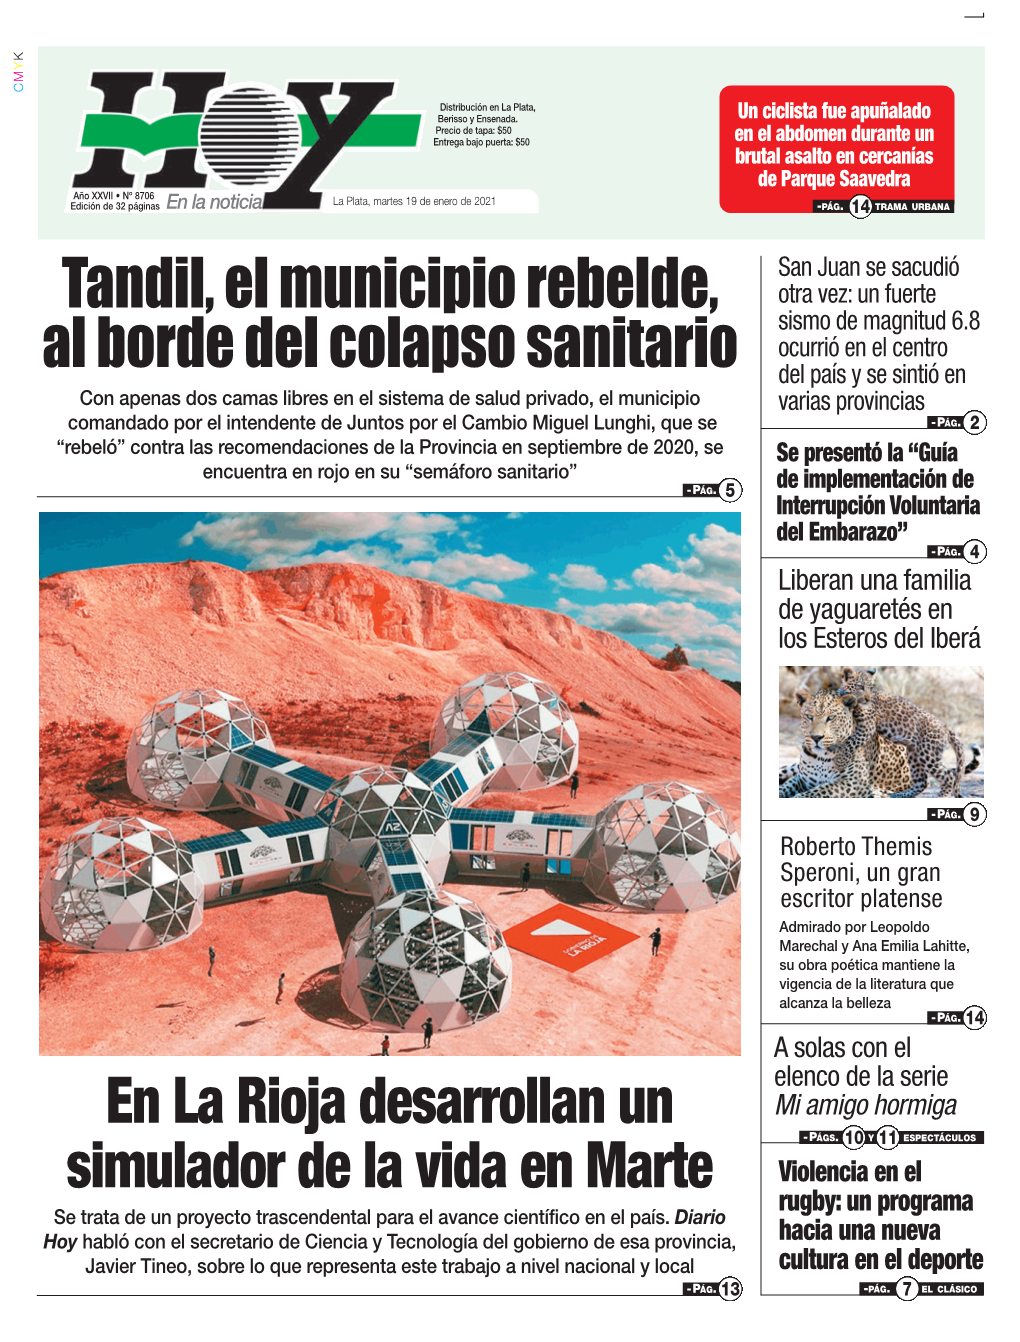 En La Rioja Desarrollan Un Simulador De La Vida En Marte Se Trata De Un Proyecto Trascendental Para El Desarrollo Científico En El País